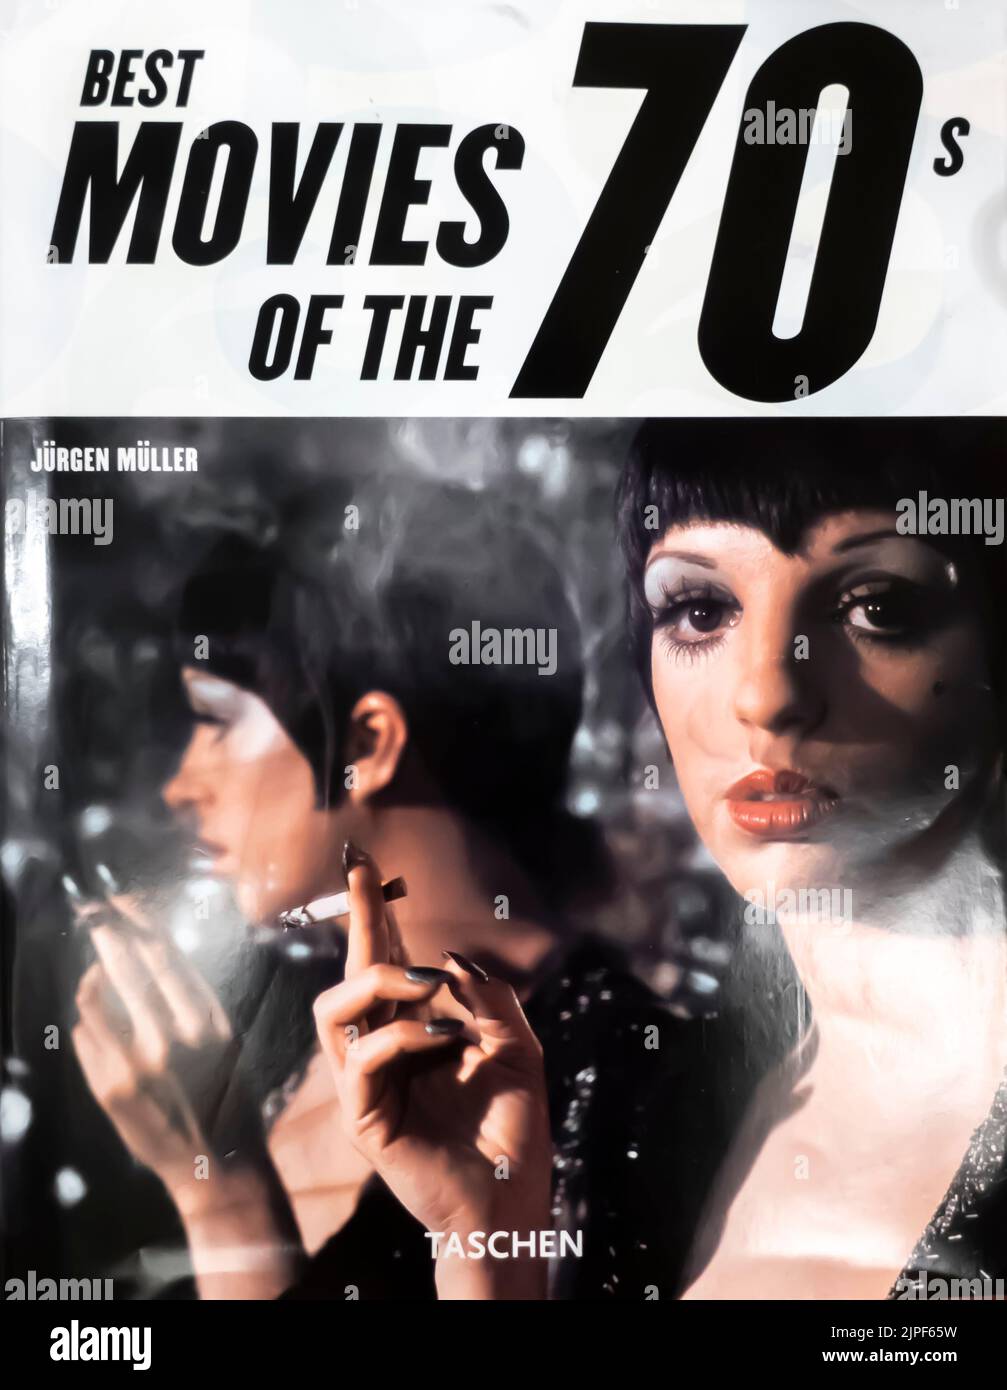 Best Movies of the 70's Hardcover - Buch von Jurgen Muller - Buchcover Stockfoto